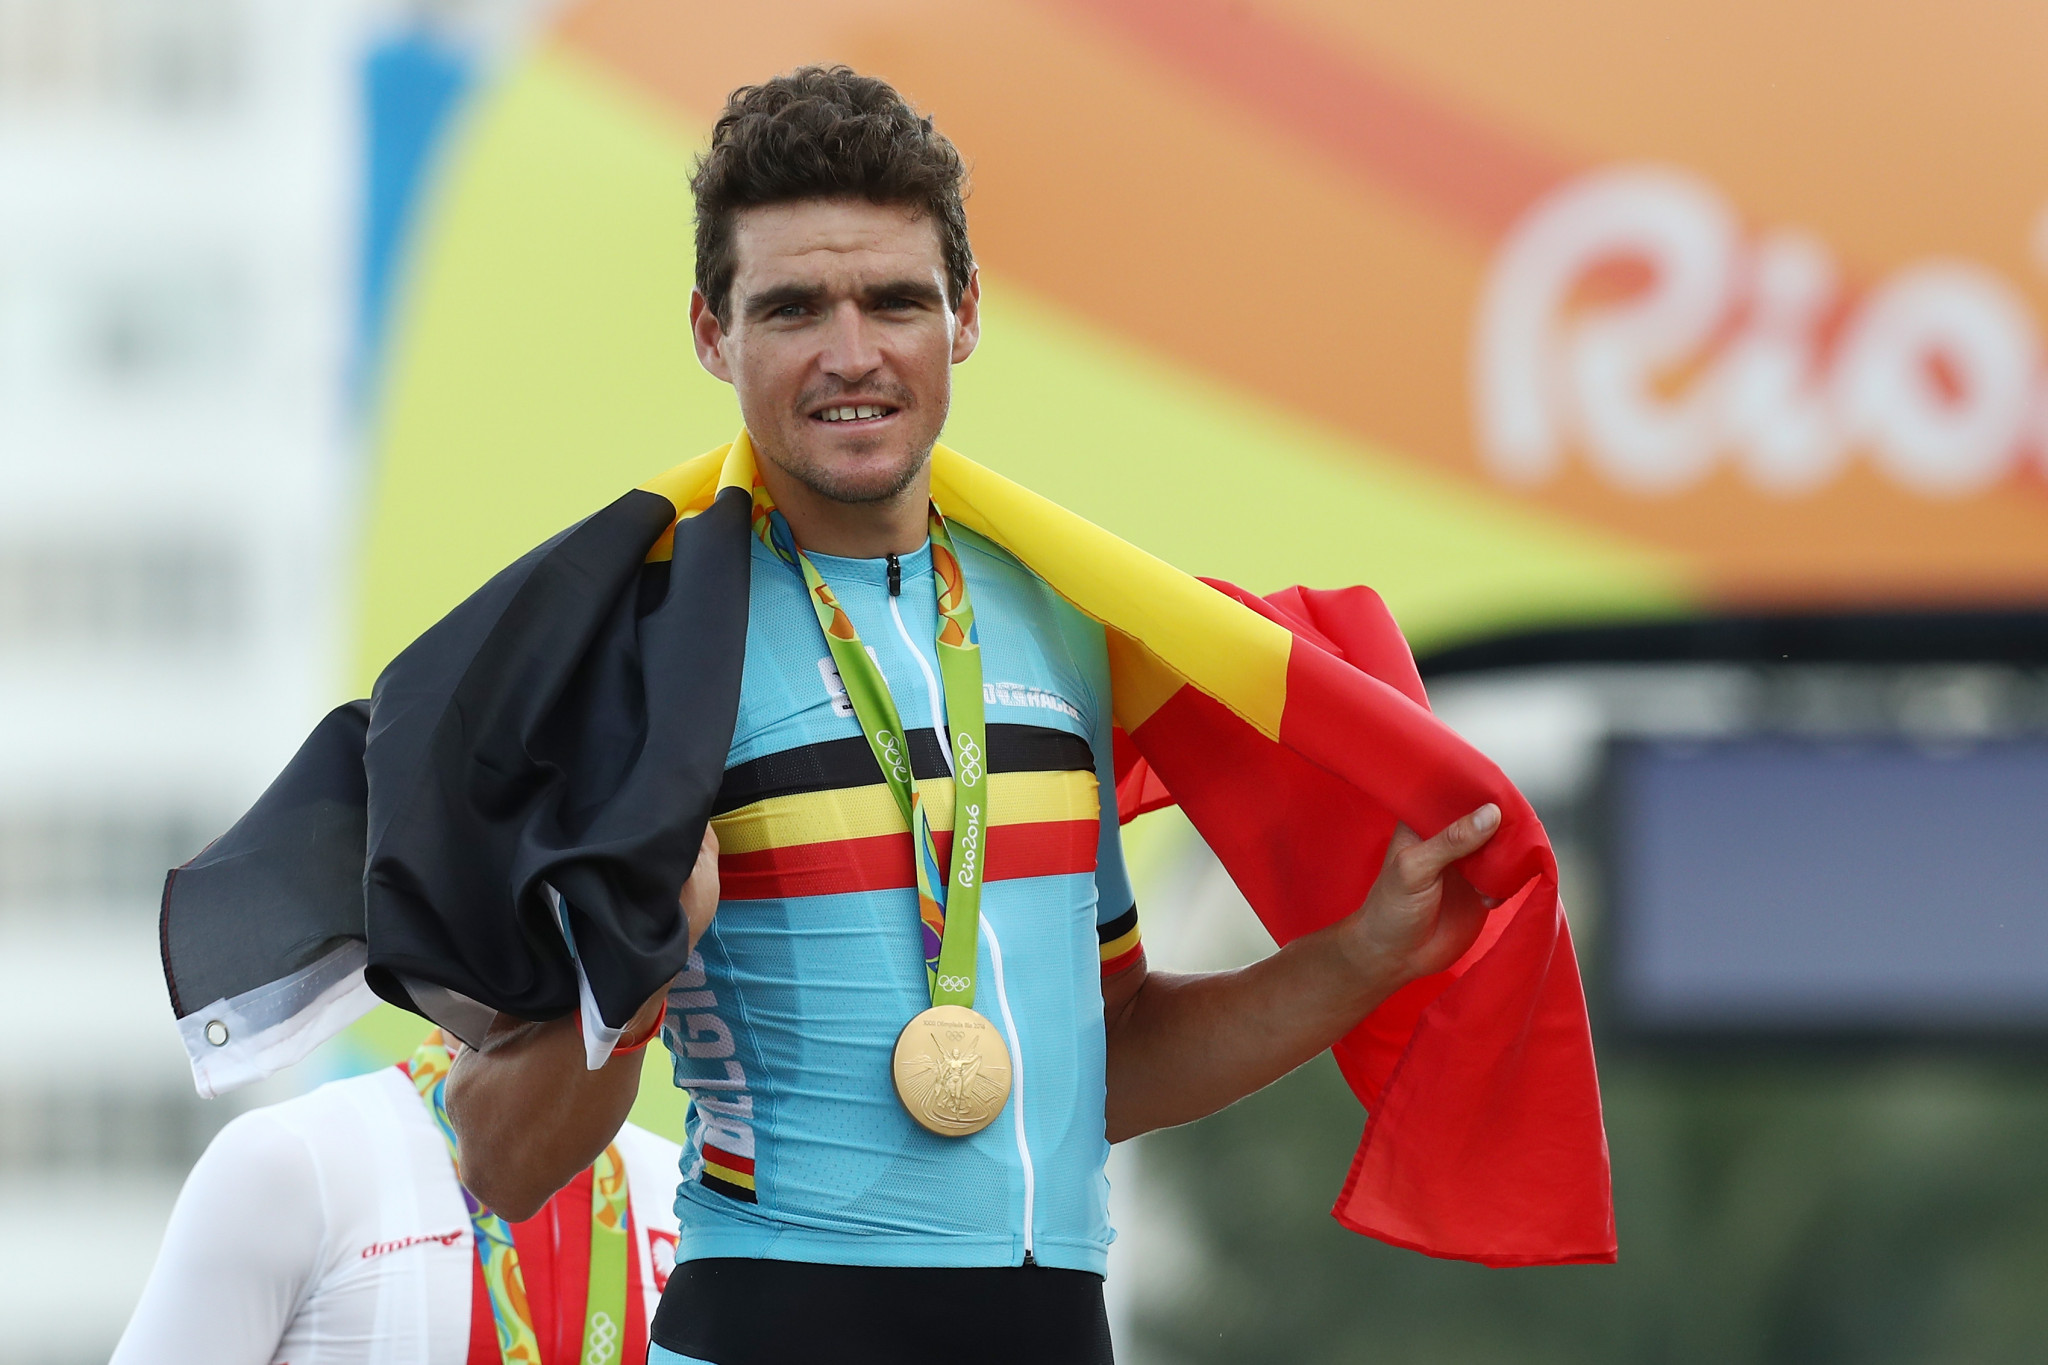 Olympic champion Van Avermaet bids to claim maiden Dwars door Vlaanderen title